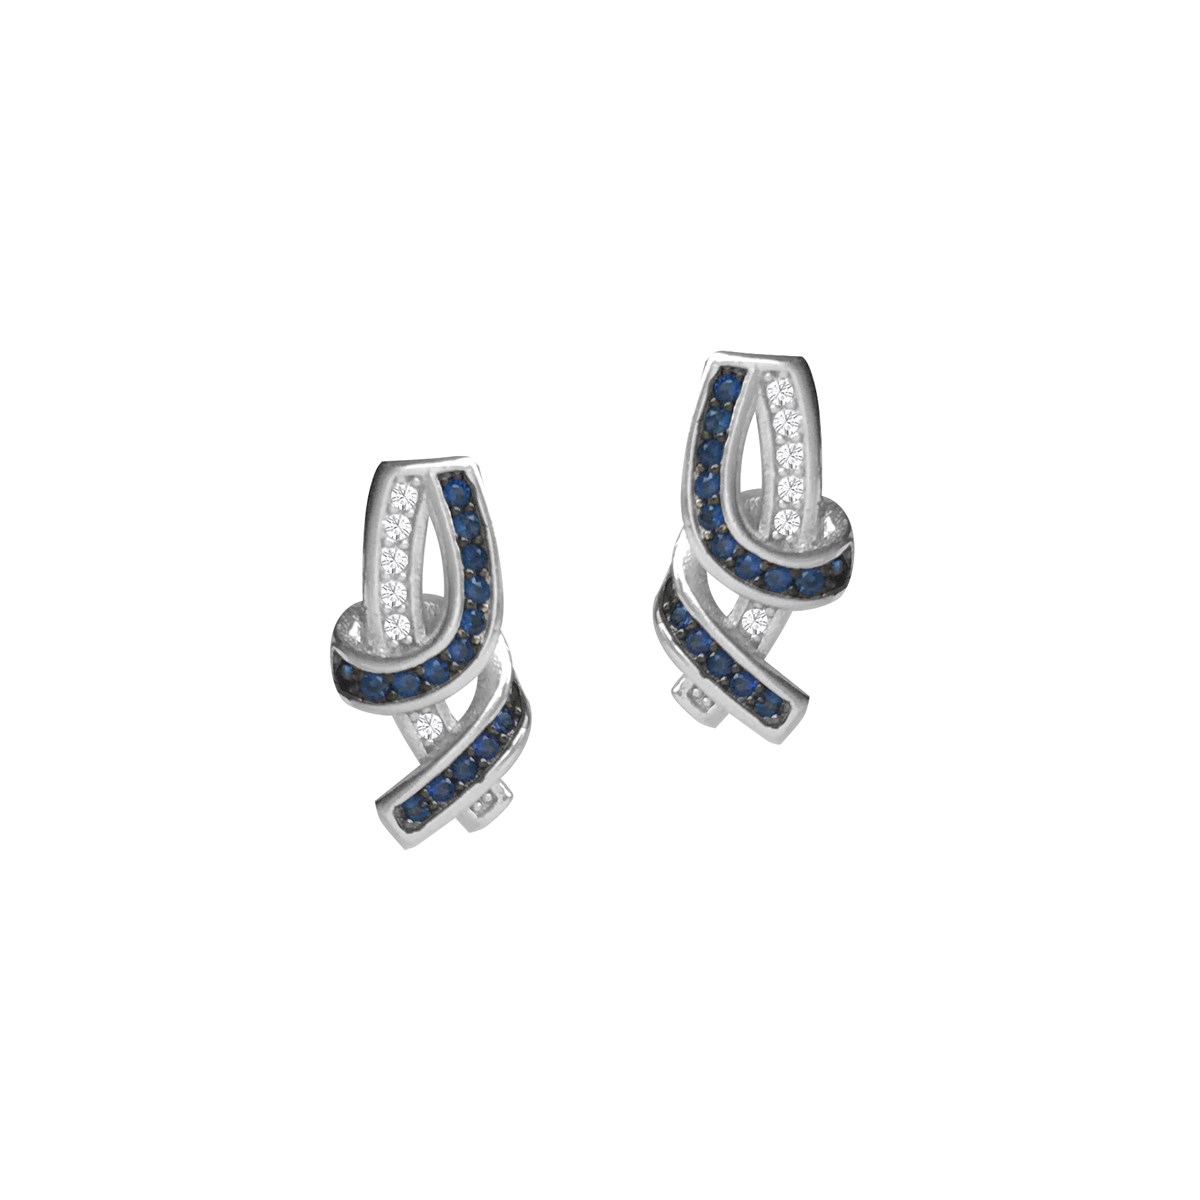 Boucles d'oreilles argent 925 rhodié et oxydes de zirconium bleu